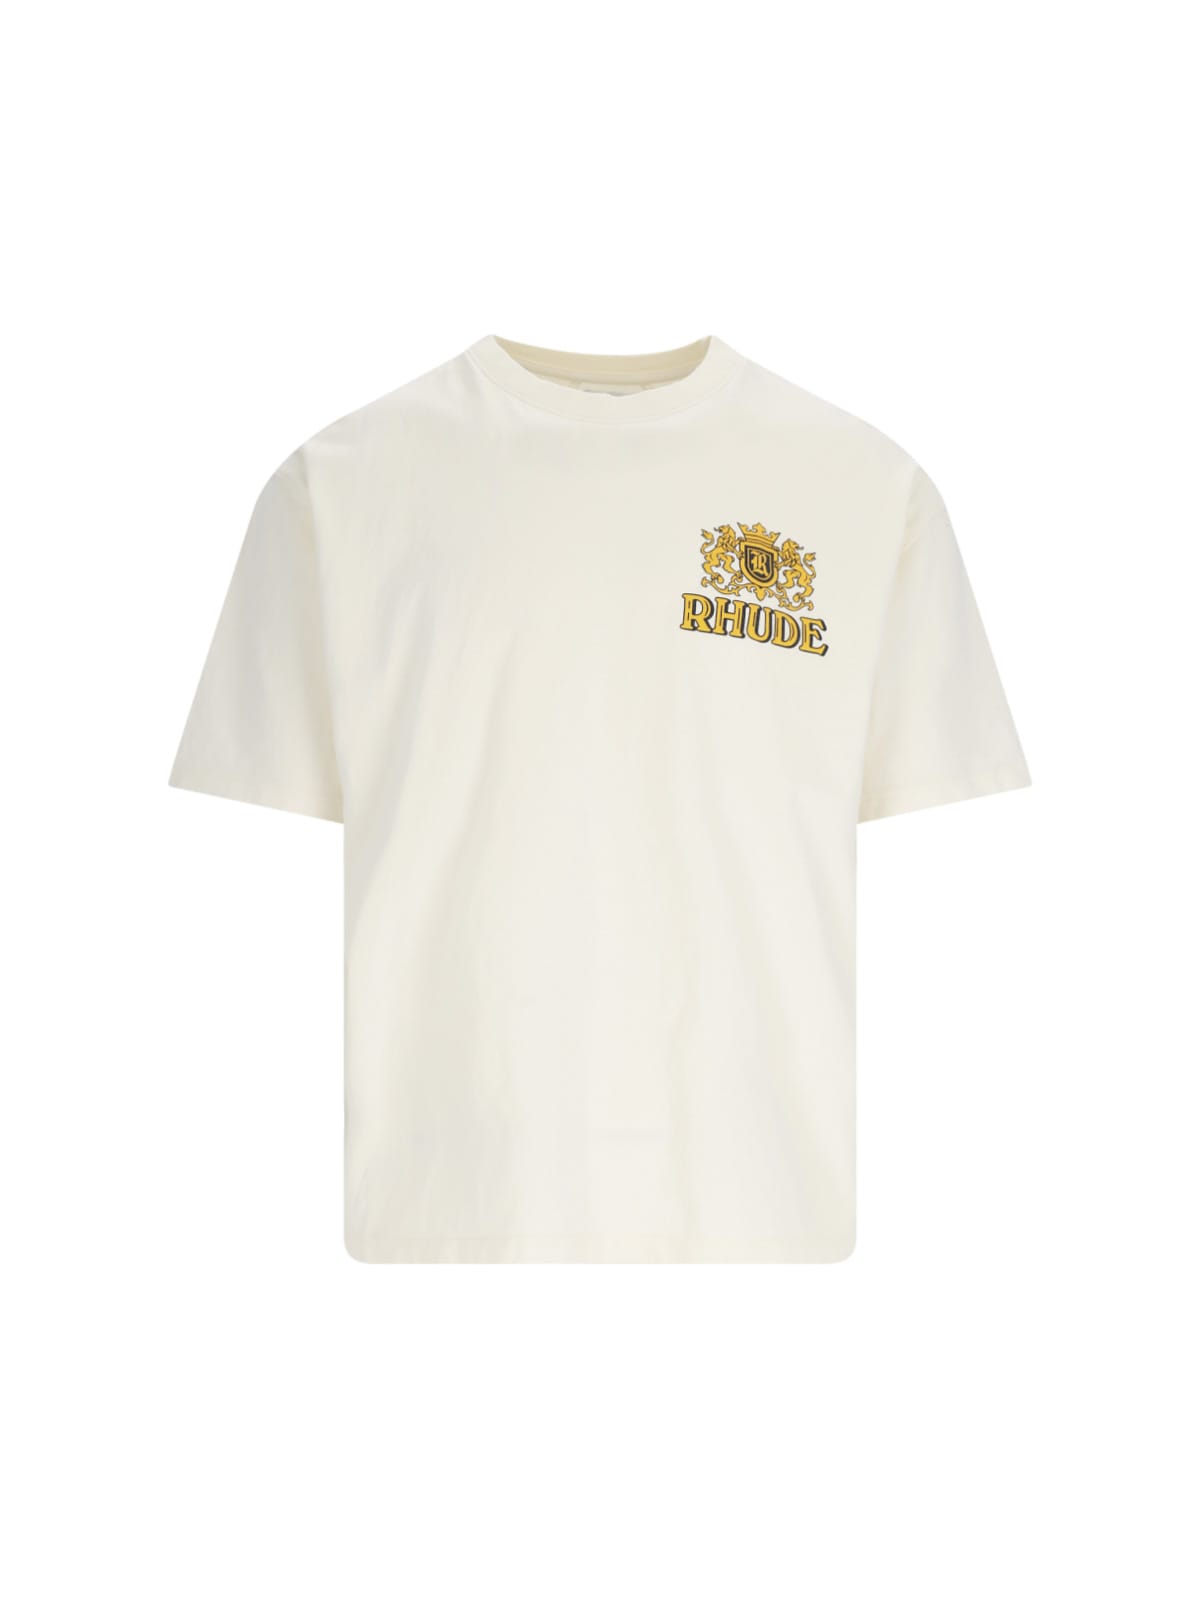 Shop Rhude Cresta Cigar T-shirt In White